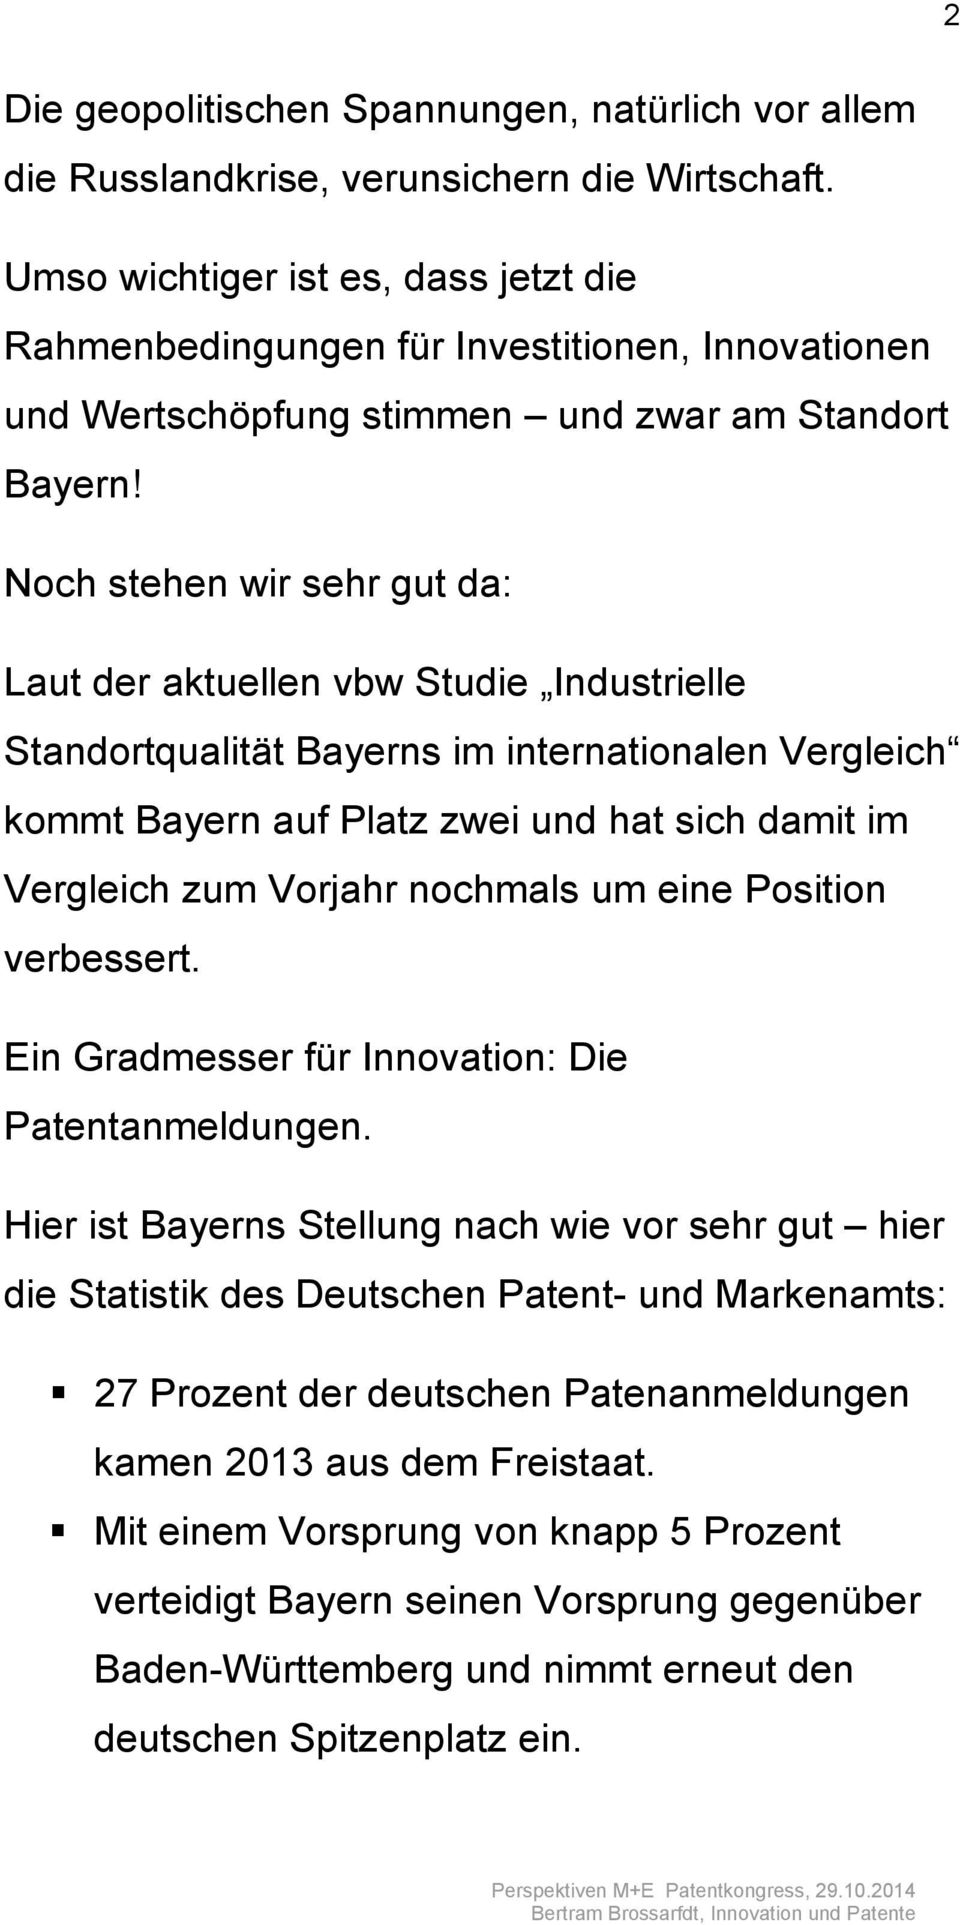 Noch stehen wir sehr gut da: Laut der aktuellen vbw Studie Industrielle Standortqualität Bayerns im internationalen Vergleich kommt Bayern auf Platz zwei und hat sich damit im Vergleich zum Vorjahr